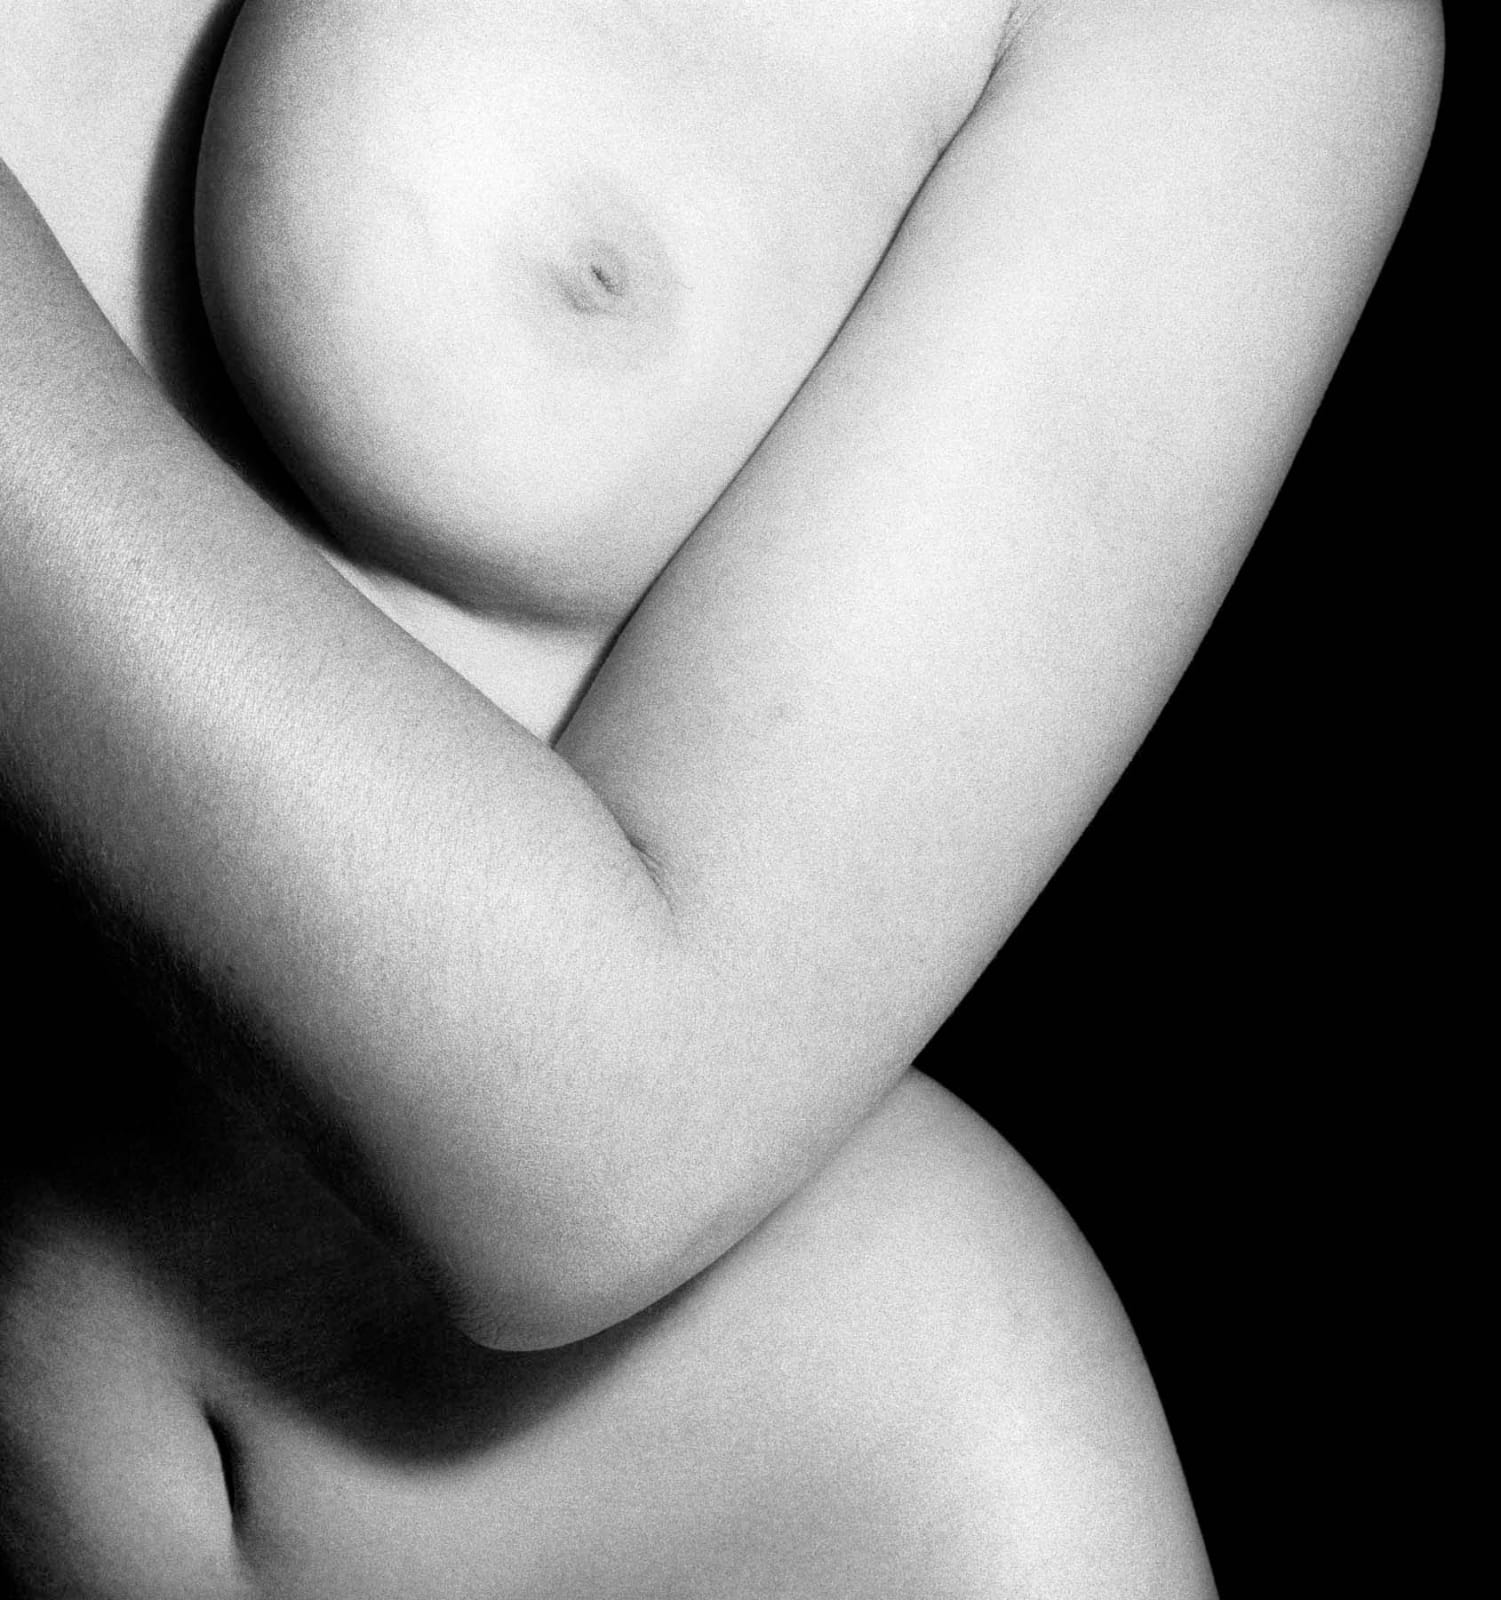 Bill Brandt, Nude, London, 1960's